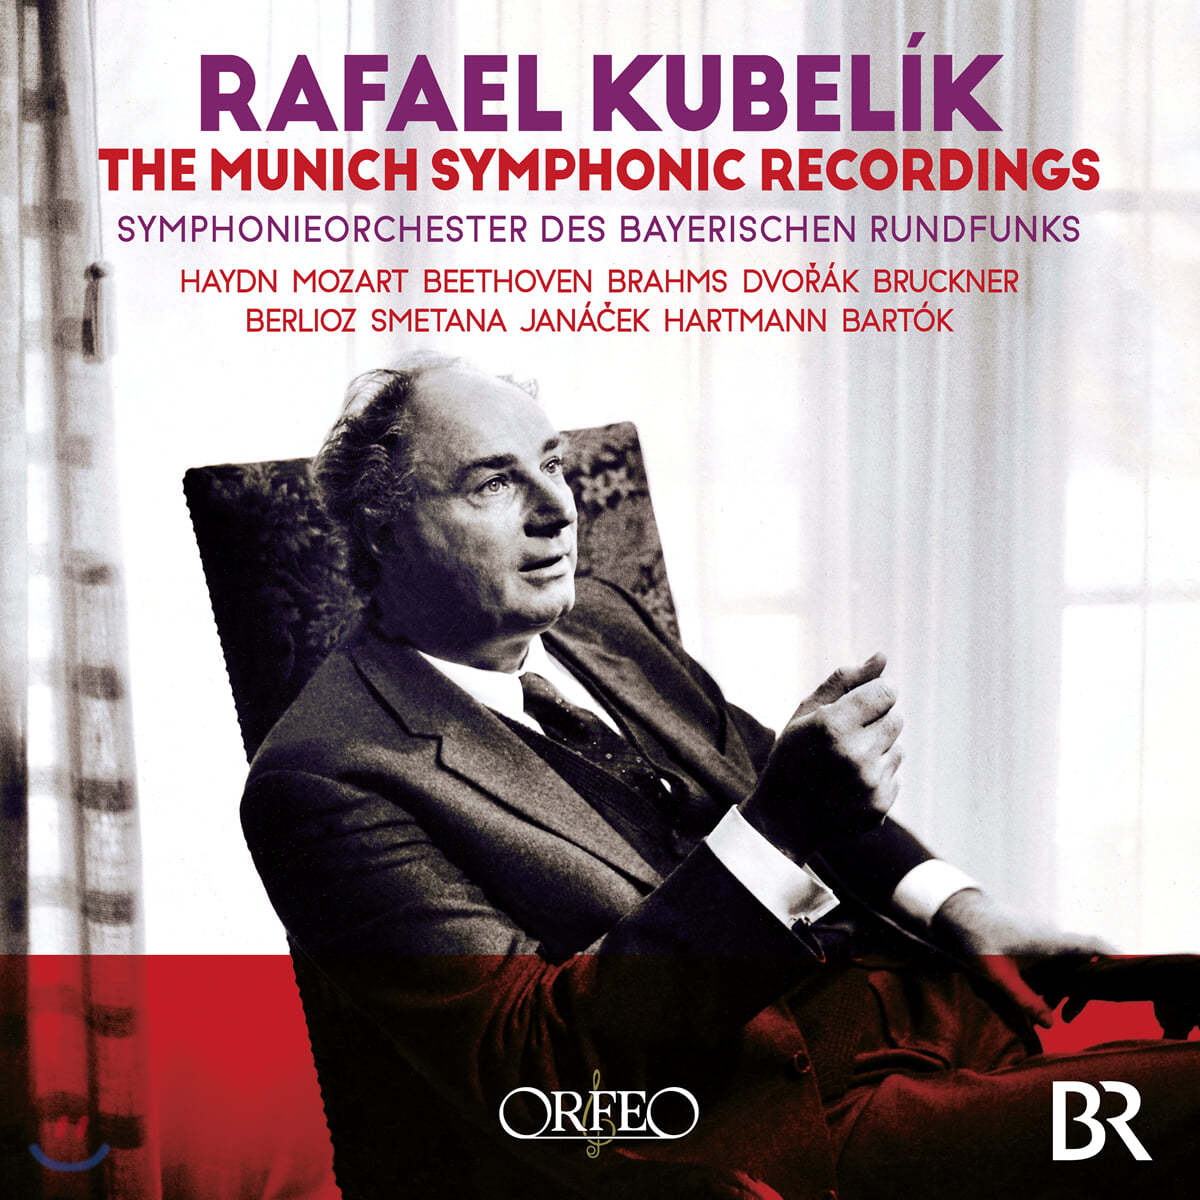 라파엘 쿠벨릭 1963-85년 뮌헨 녹음집 (Rafael Kubelik - The Munich Symphonic Recordings)